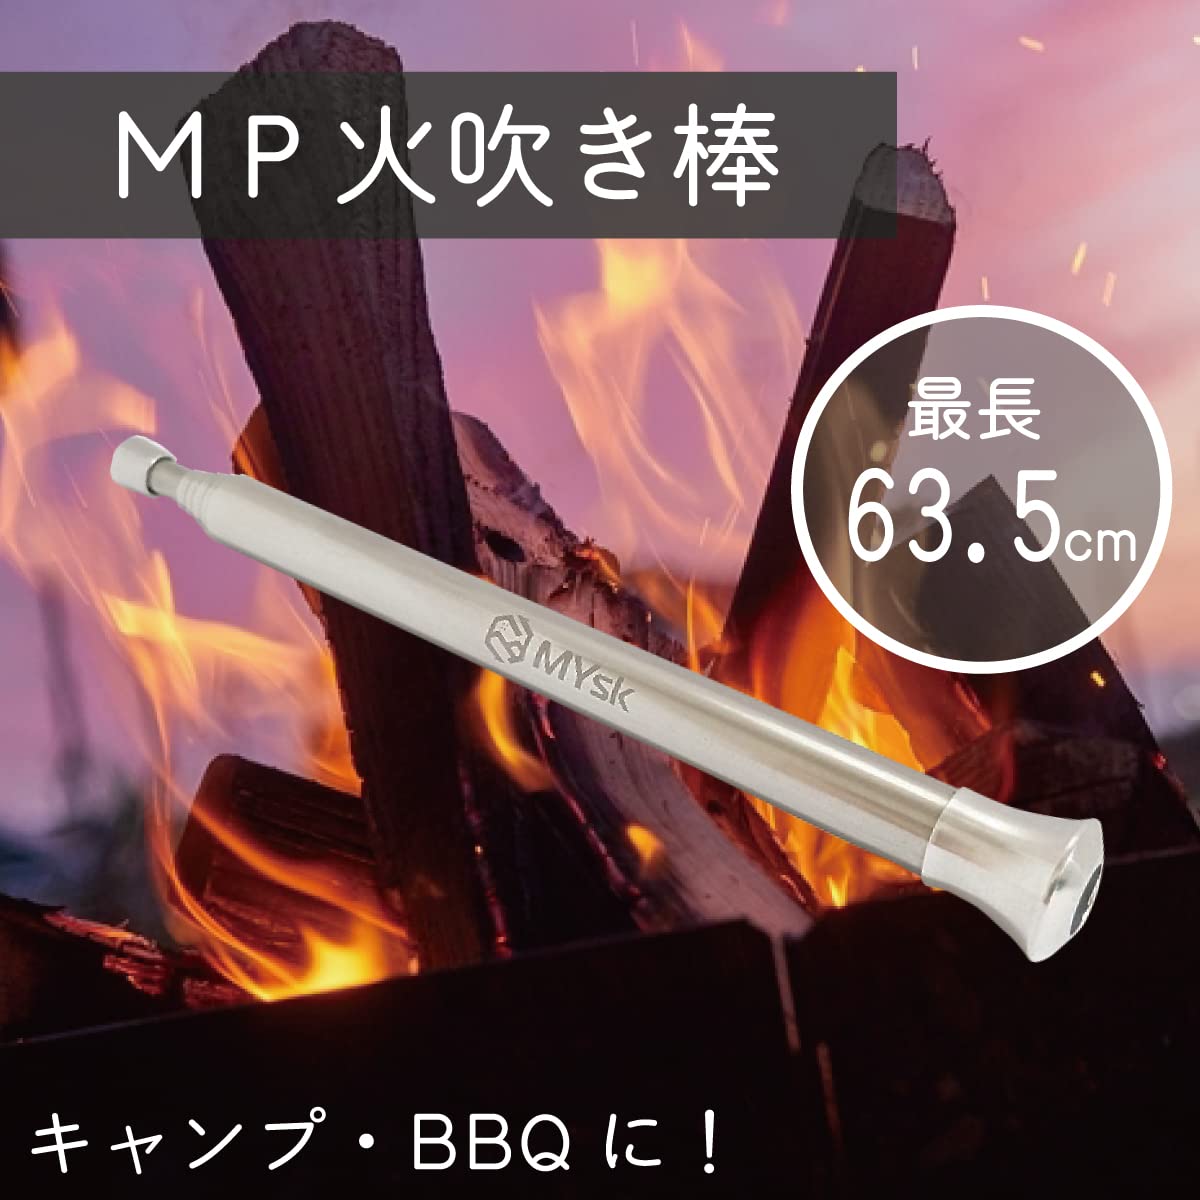 MP fire blow . stick ( plain )